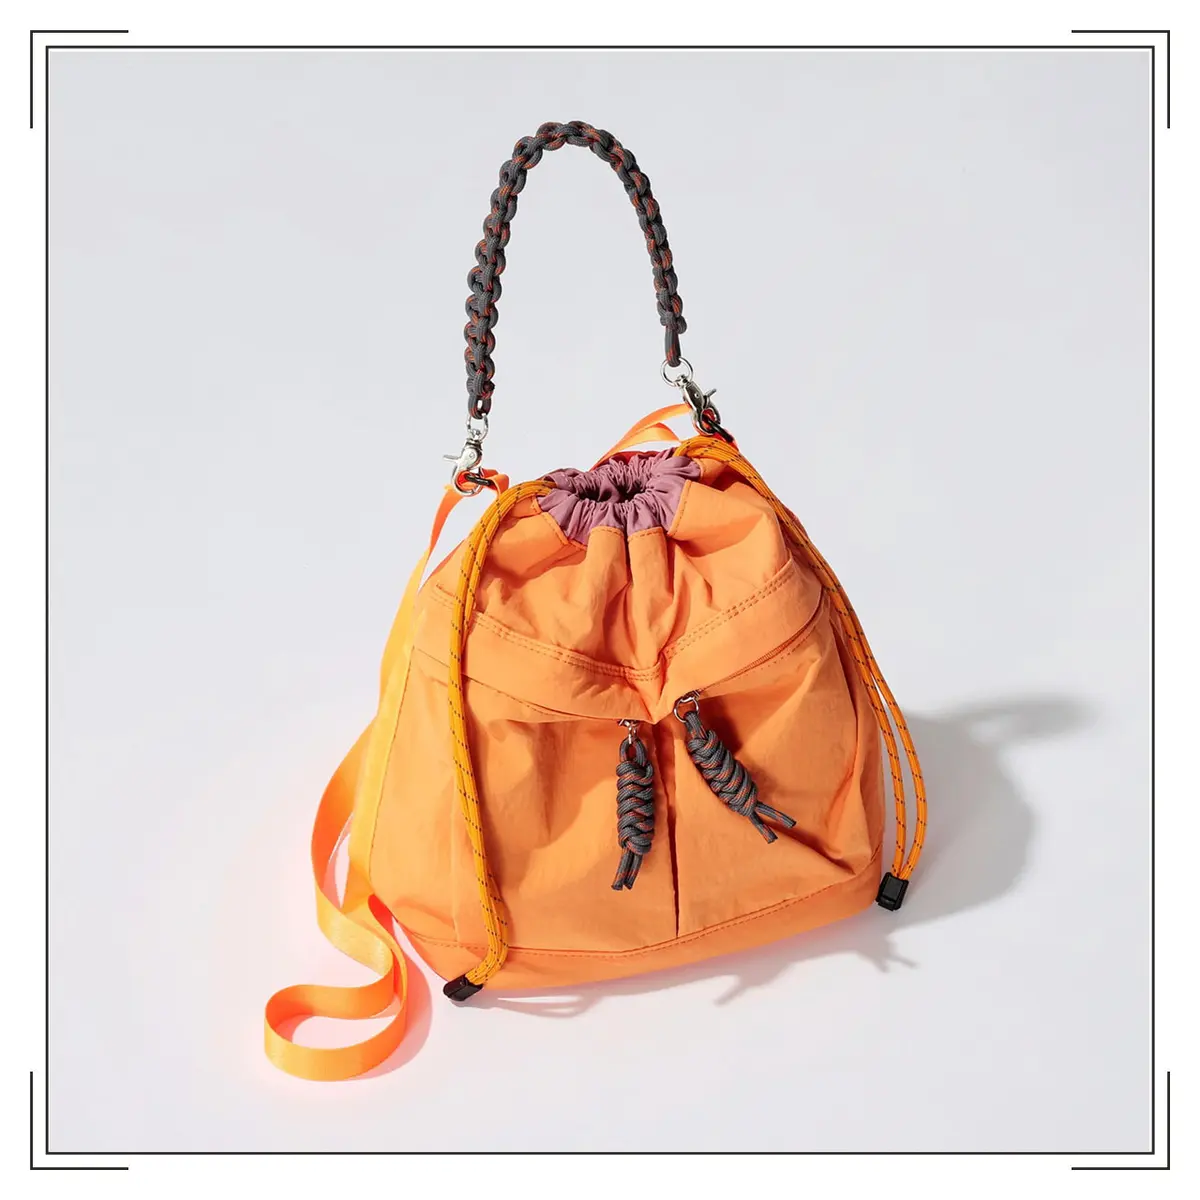 『コントロールフリーク』のオレンジ巾着バッグ